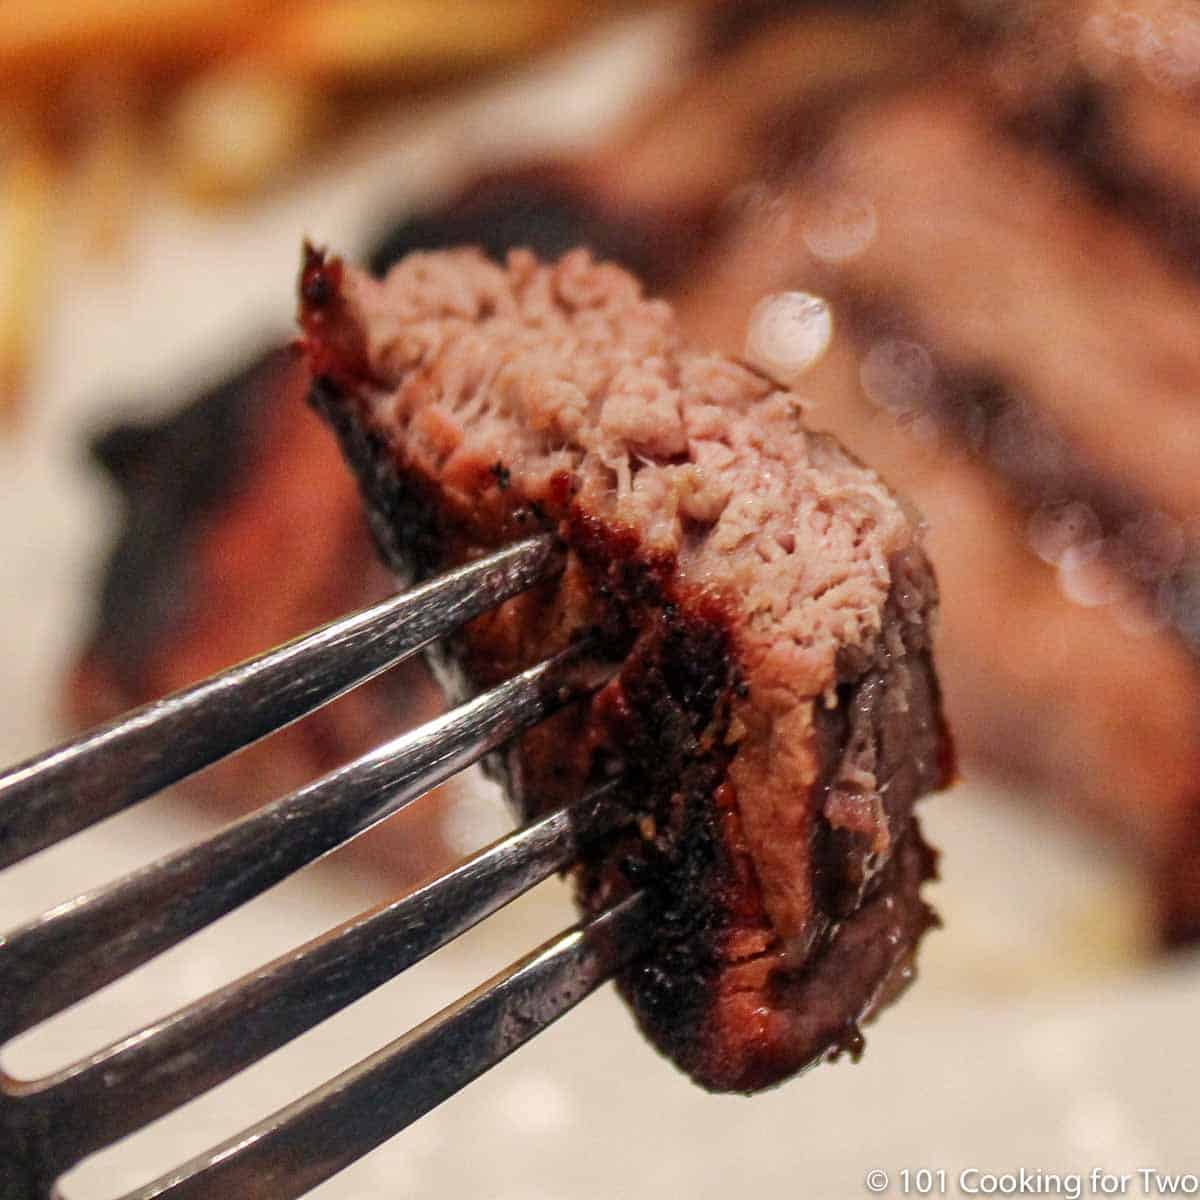 bite of steak on fork.